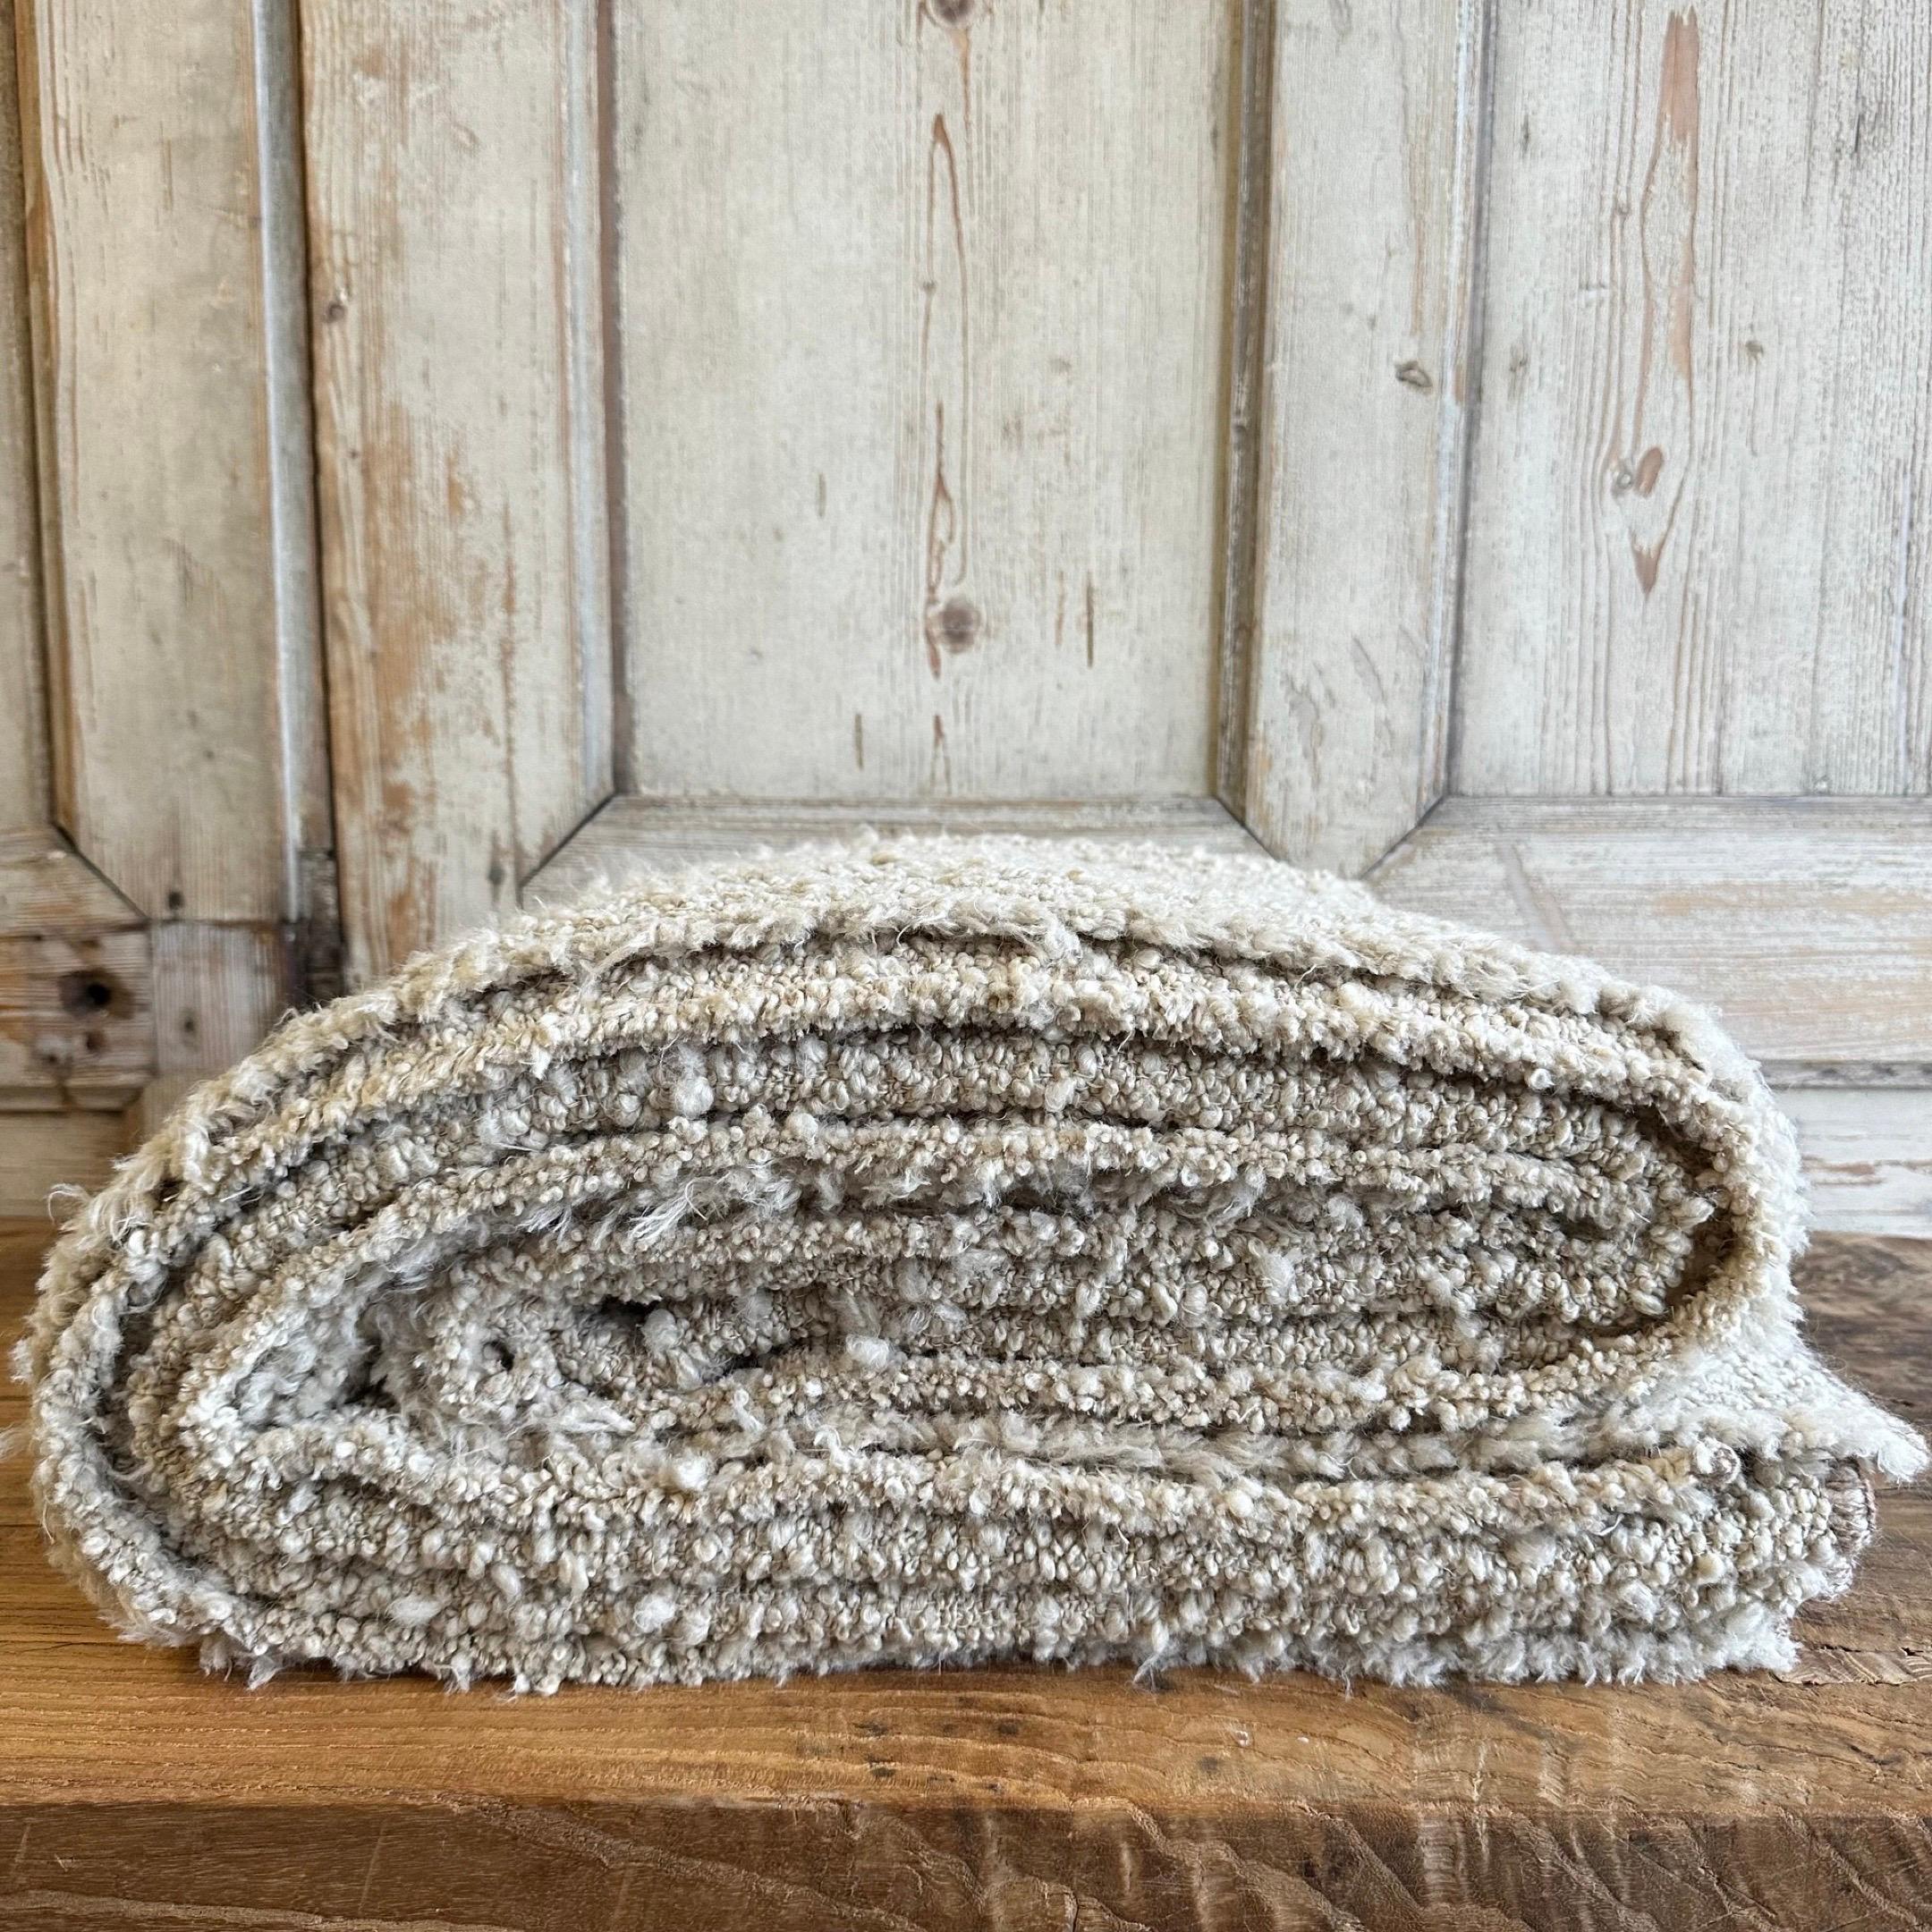 Kusama wird in Belgien mit traditionellen Webtechniken gewebt und ist eine schwere Decke mit einem weichen Boule-Garn auf einer Baumwollkette. Diese Decke ist optisch sehr ansprechend und kuschelig. 
Farbe: Hafer
Inhalt:
Wolle 32%
Acryl